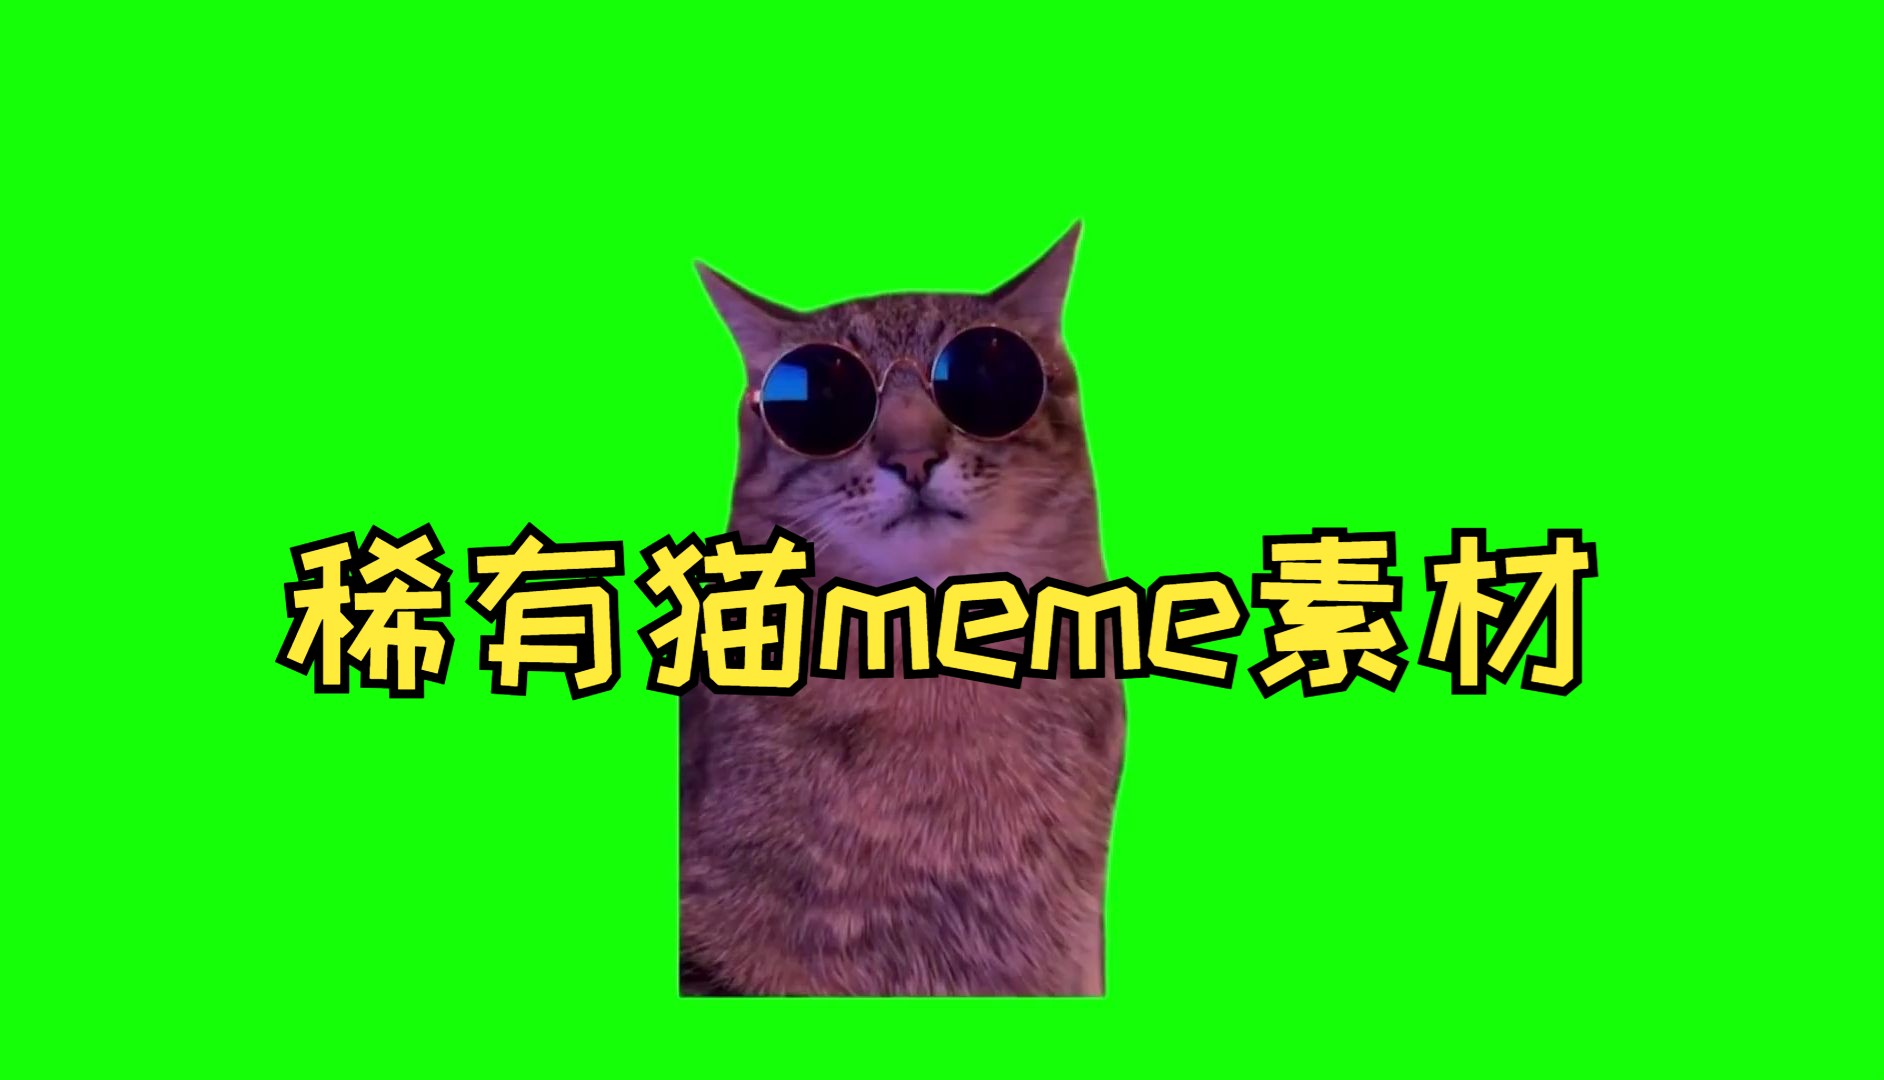 稀有猫meme绿幕GB素材（自选）